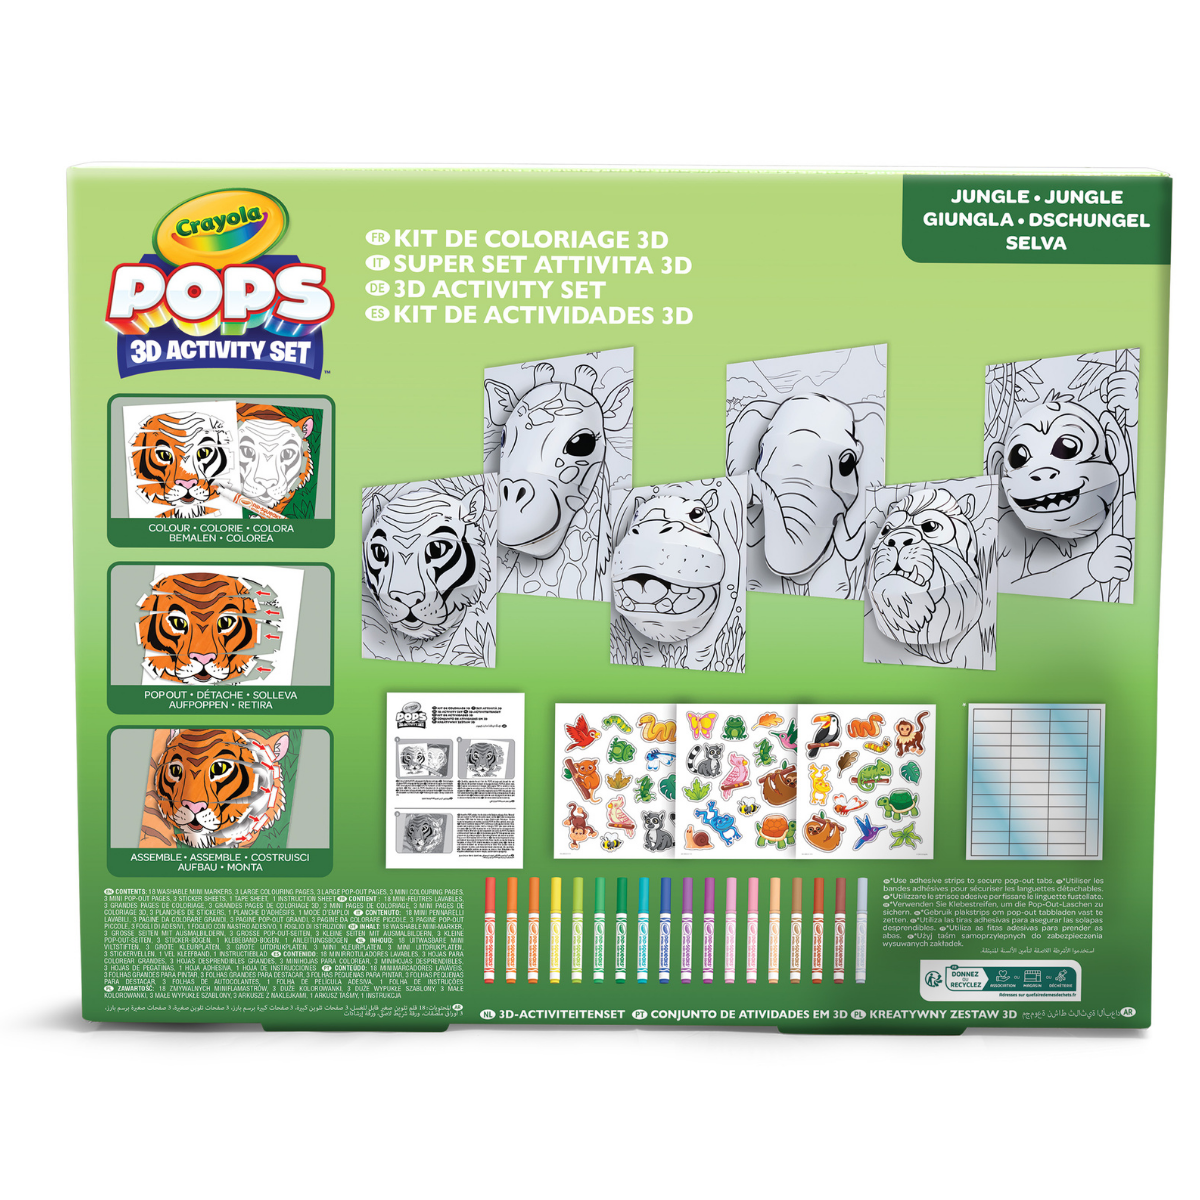 Crayola pops 3d activity set animali della giungla – colora e crea disegni tridimensionali - CRAYOLA